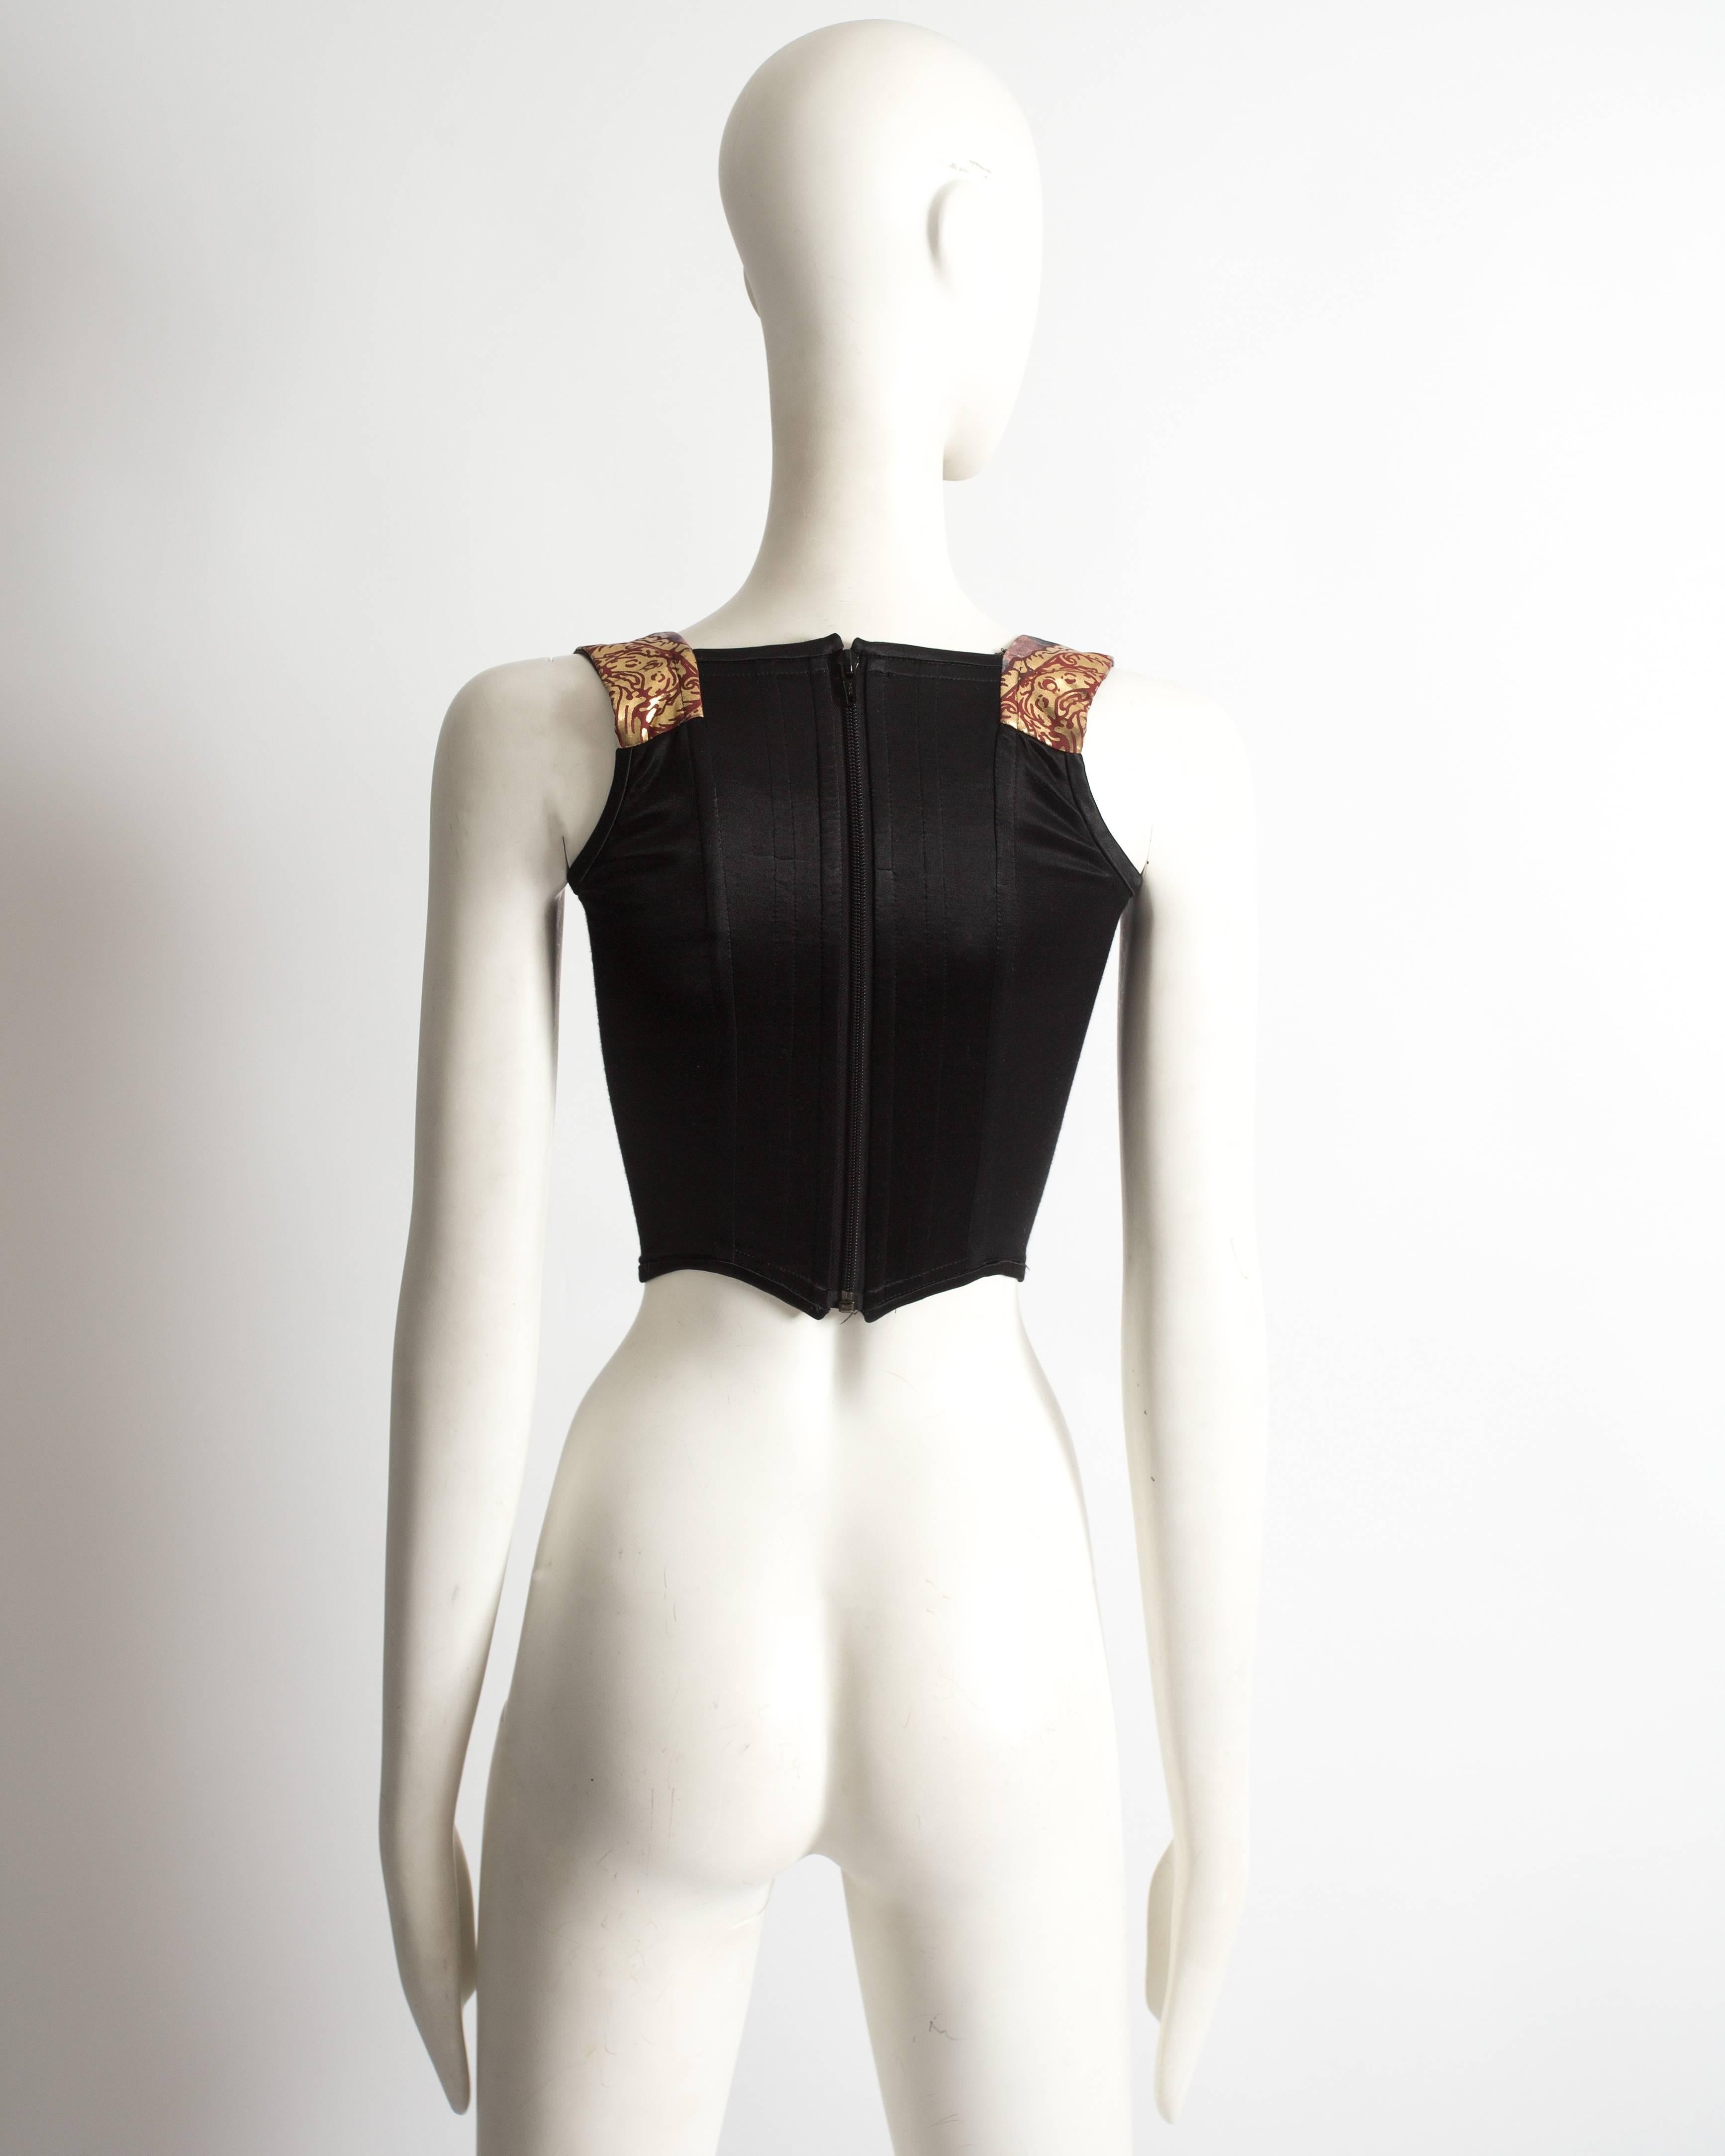 Brown Vivienne Westwood boned Cherub corset, AW 1991